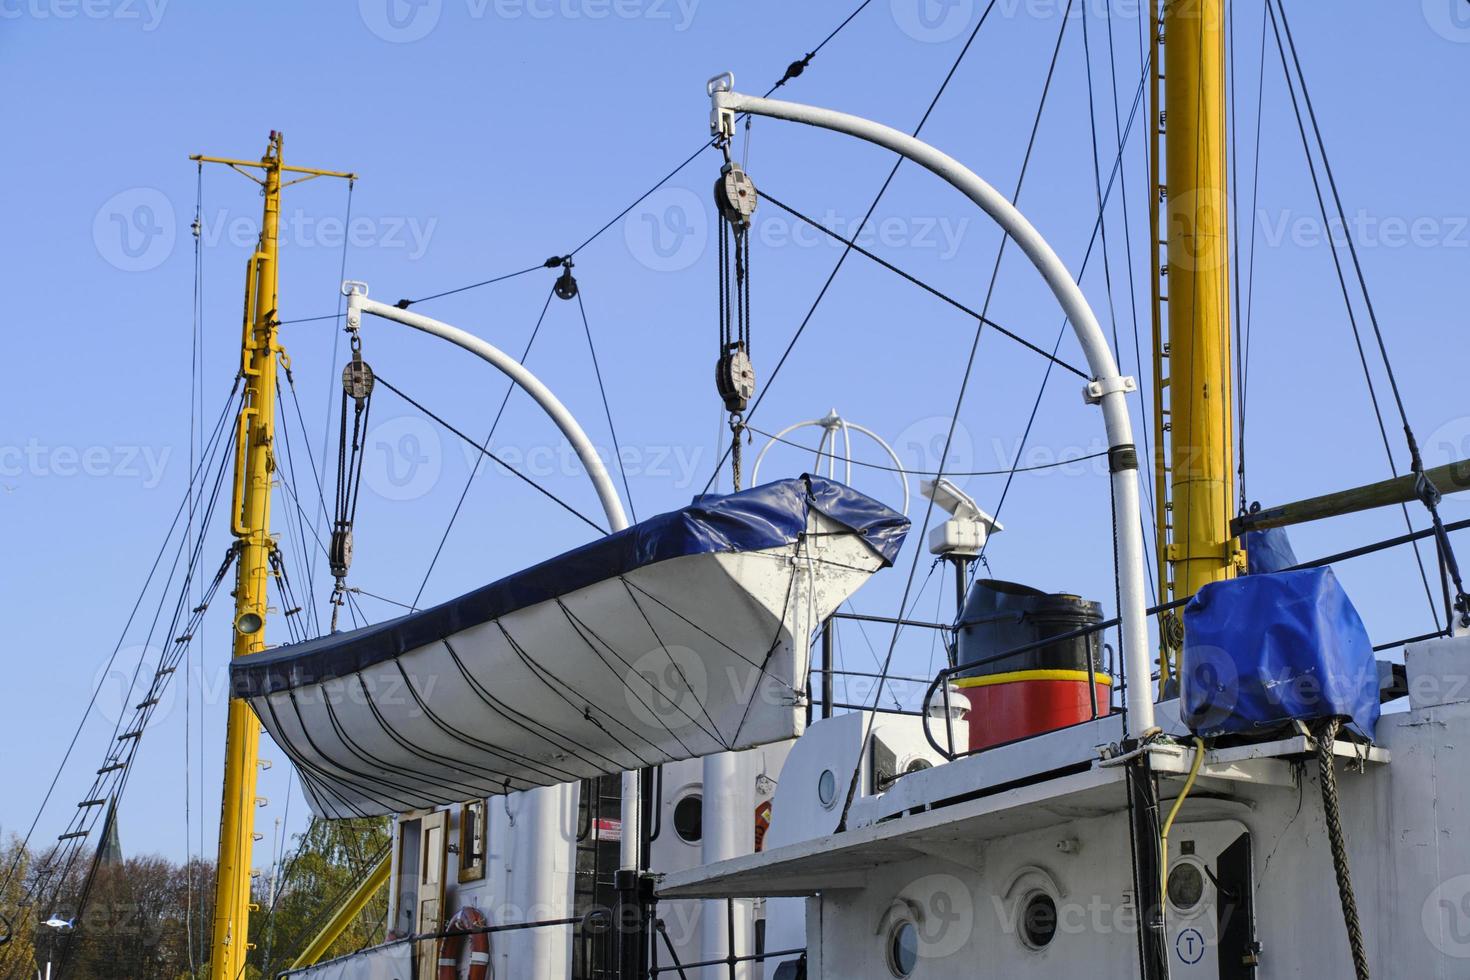 el bote salvavidas de madera está suspendido del barco de popa. 18784888  Foto de stock en Vecteezy